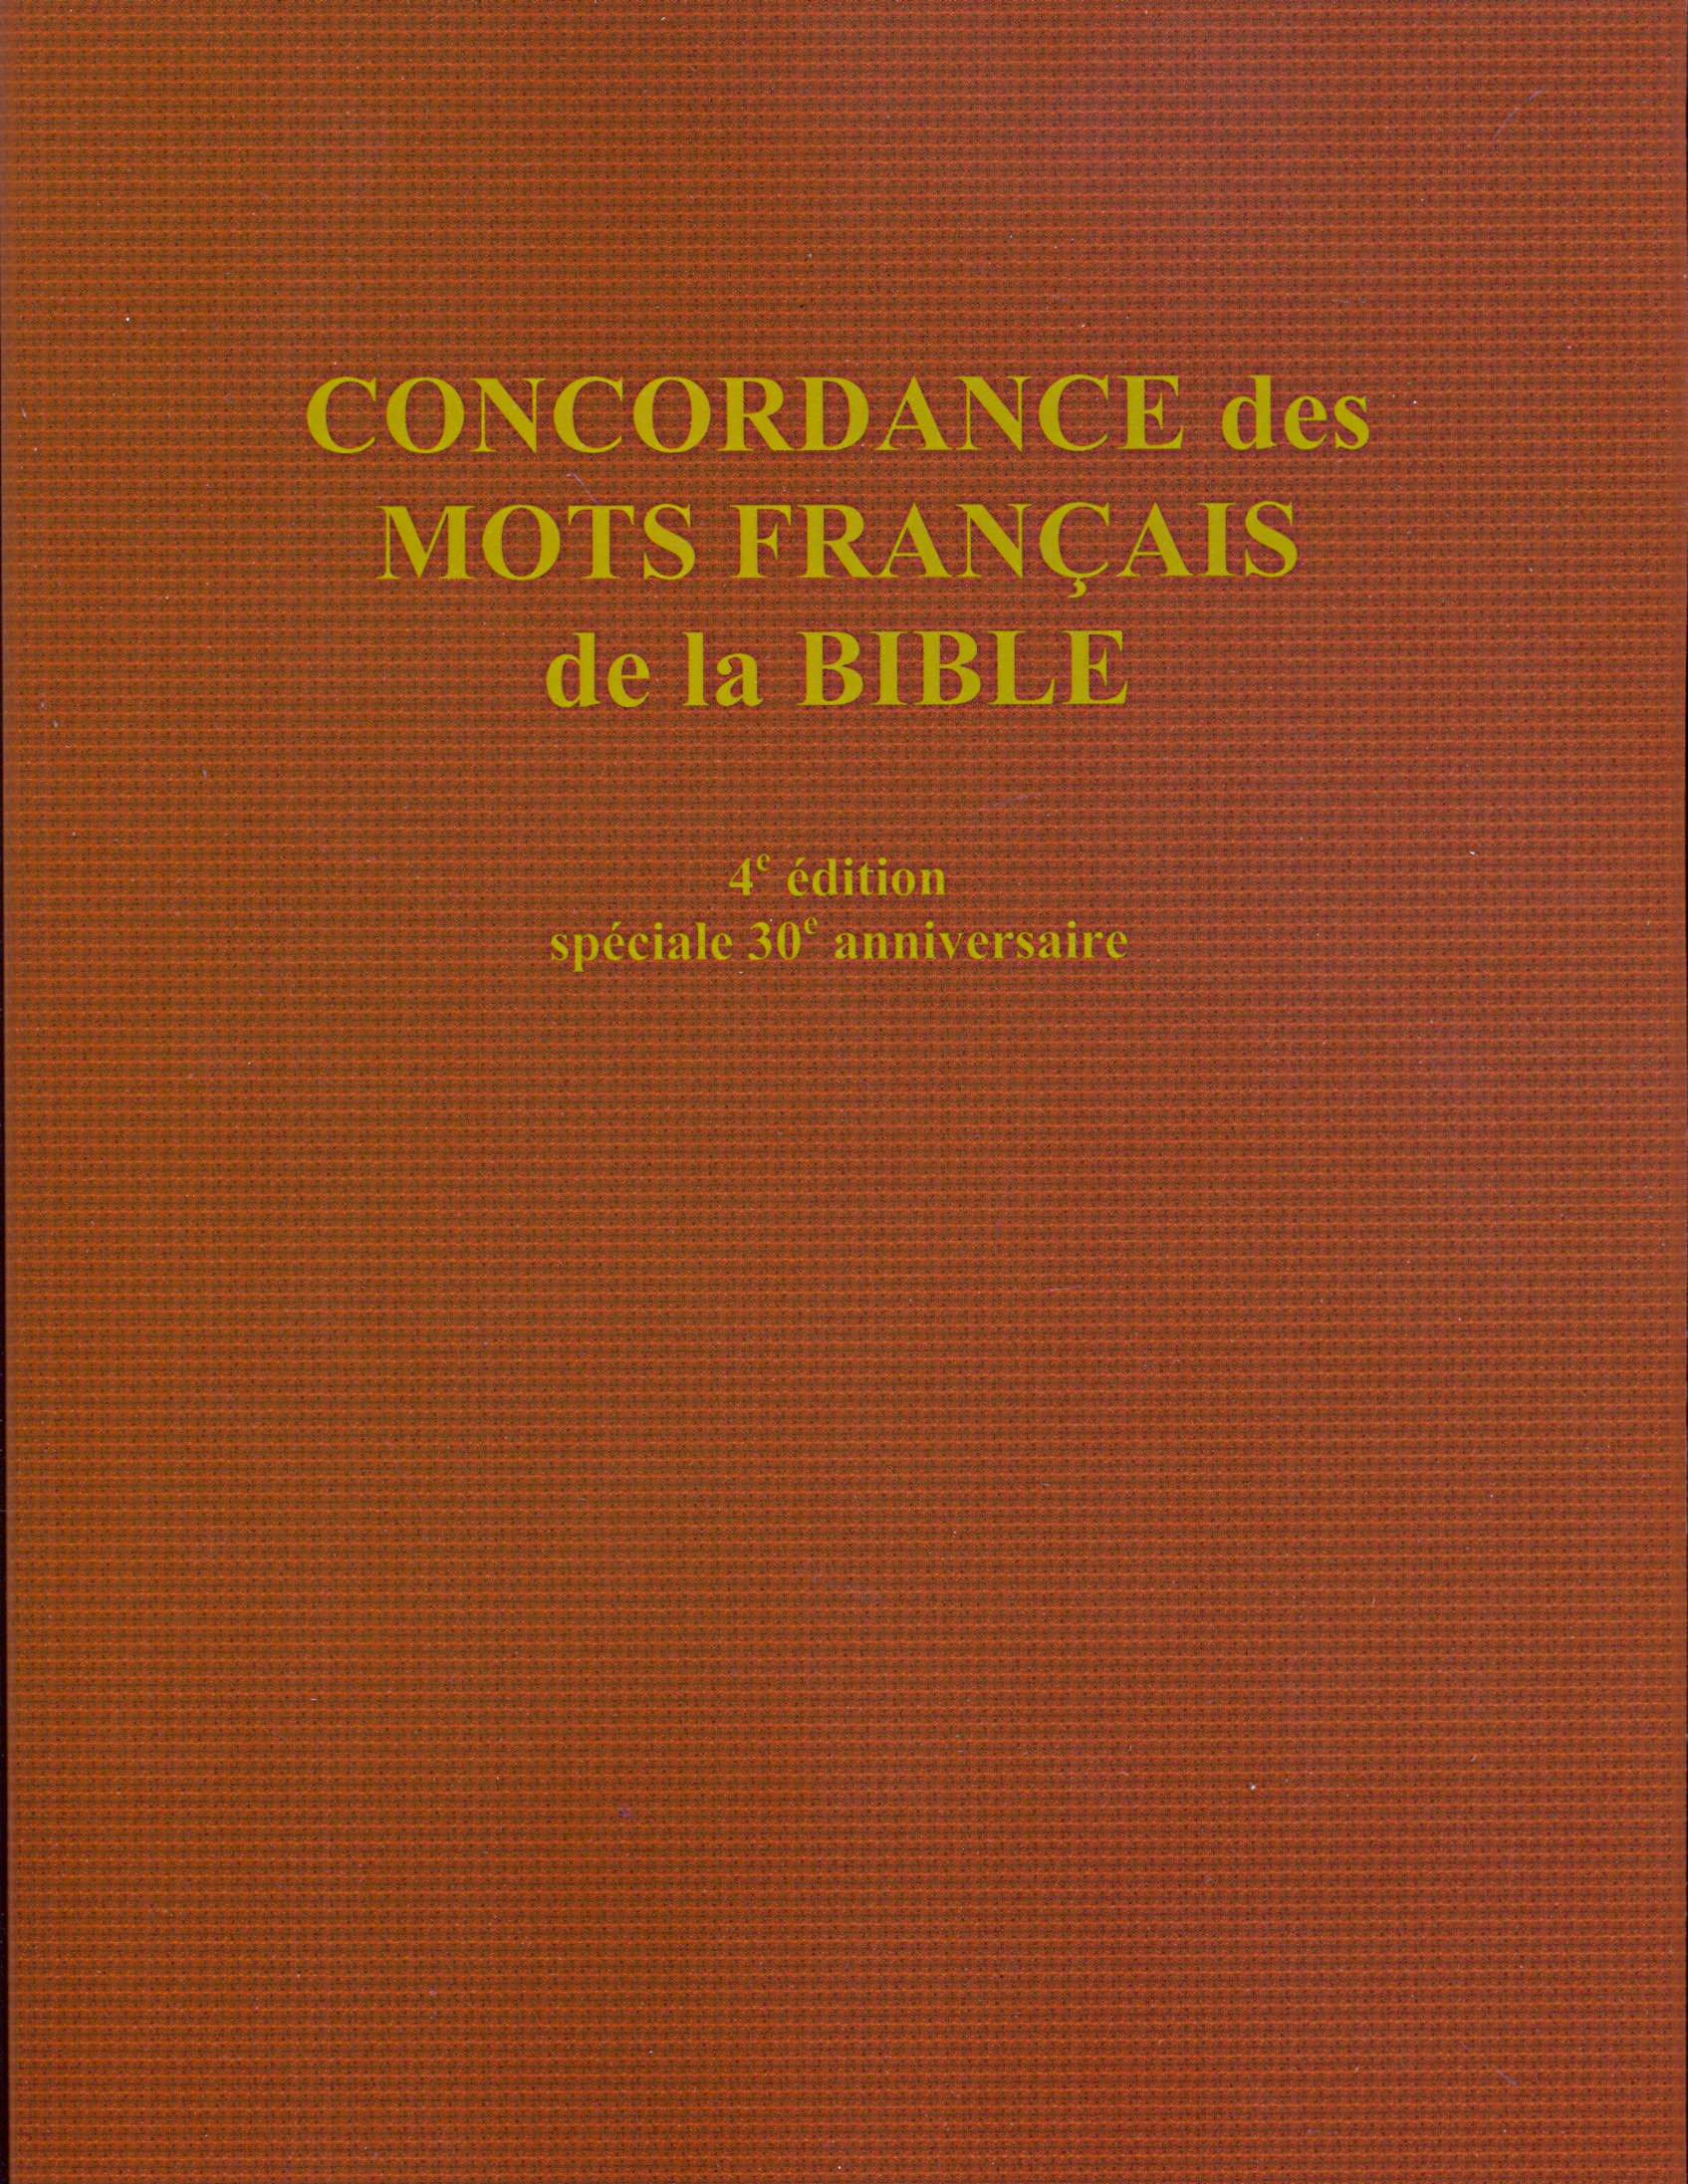 Concordance des mots français de la Bible